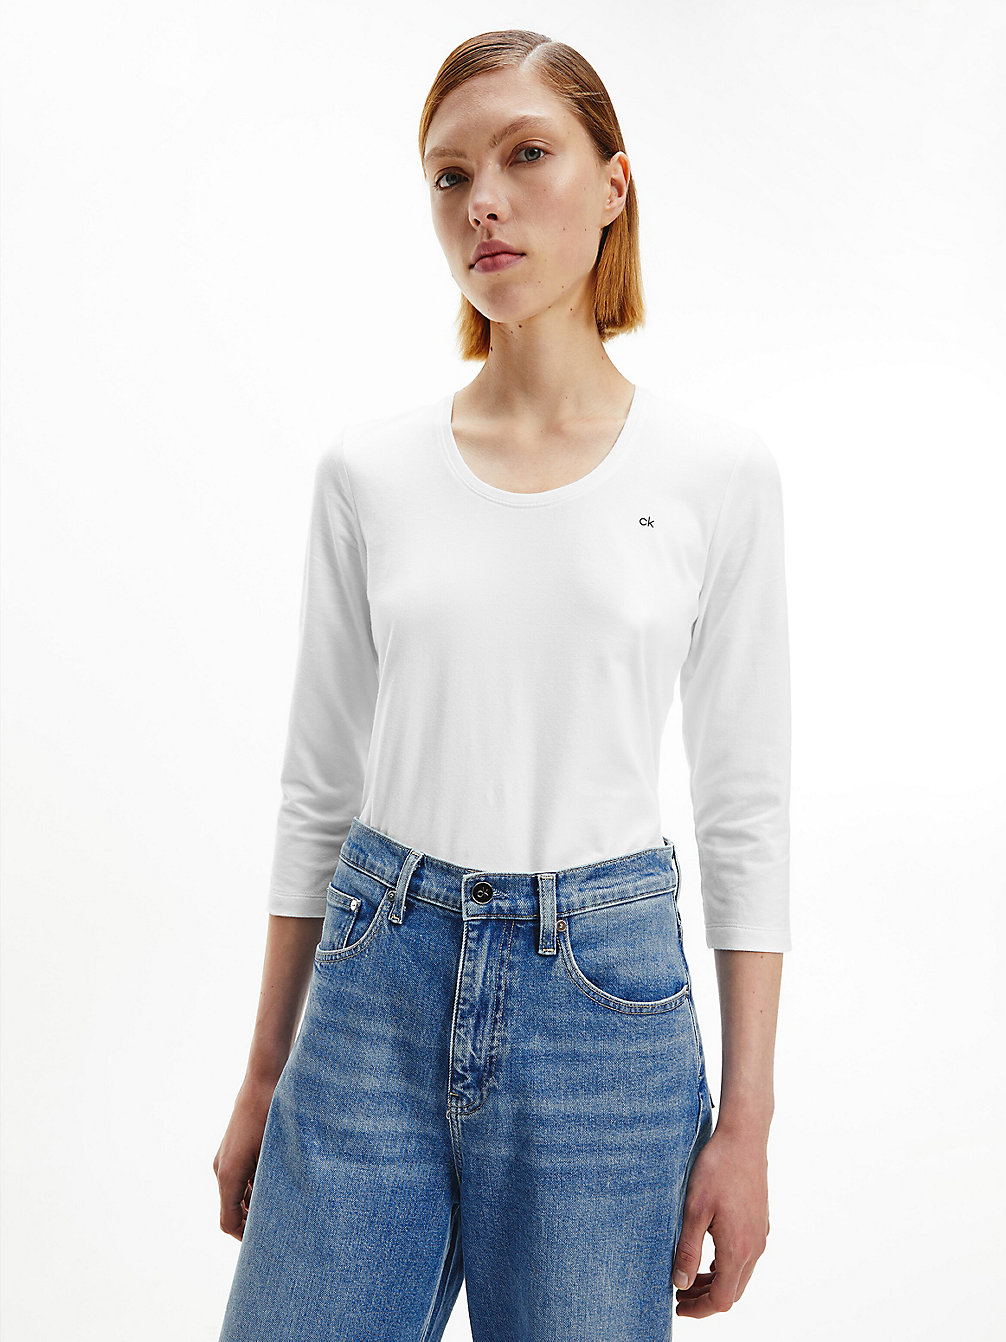 BRIGHT WHITE > Schmales T-Shirt Aus Bio-Baumwolle > undefined Damen - Calvin Klein